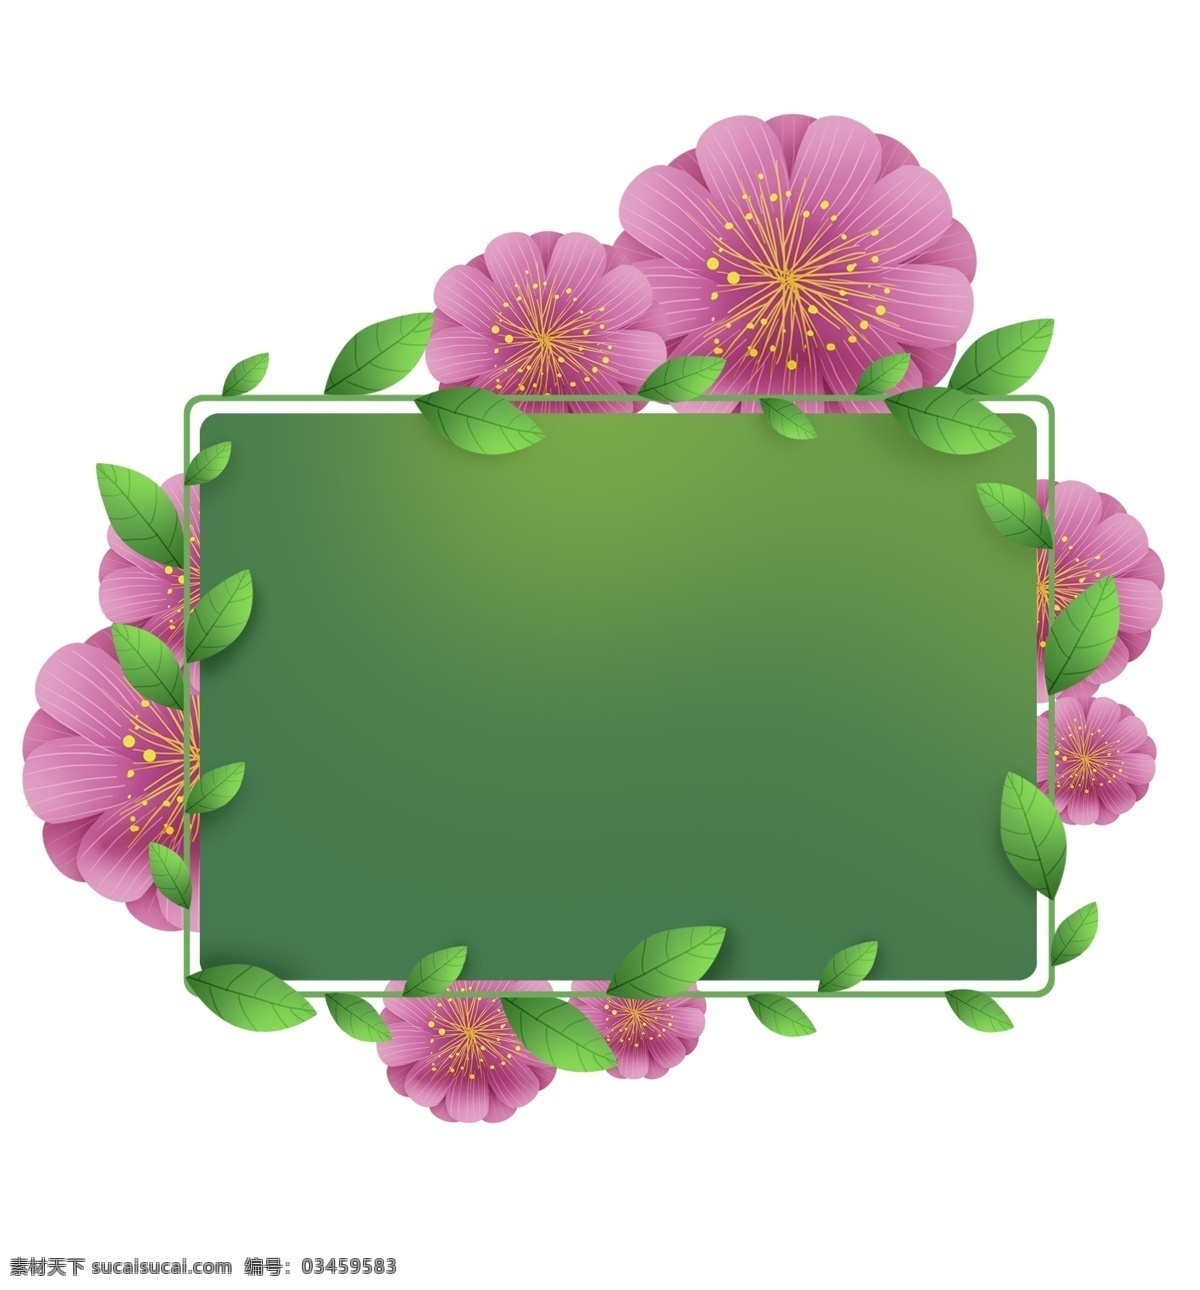 粉色 花卉 绿色植物 文字 框 绿色 花卉对话框 春季 植物 花朵 立体 春天文字框 叶子 春天标题框